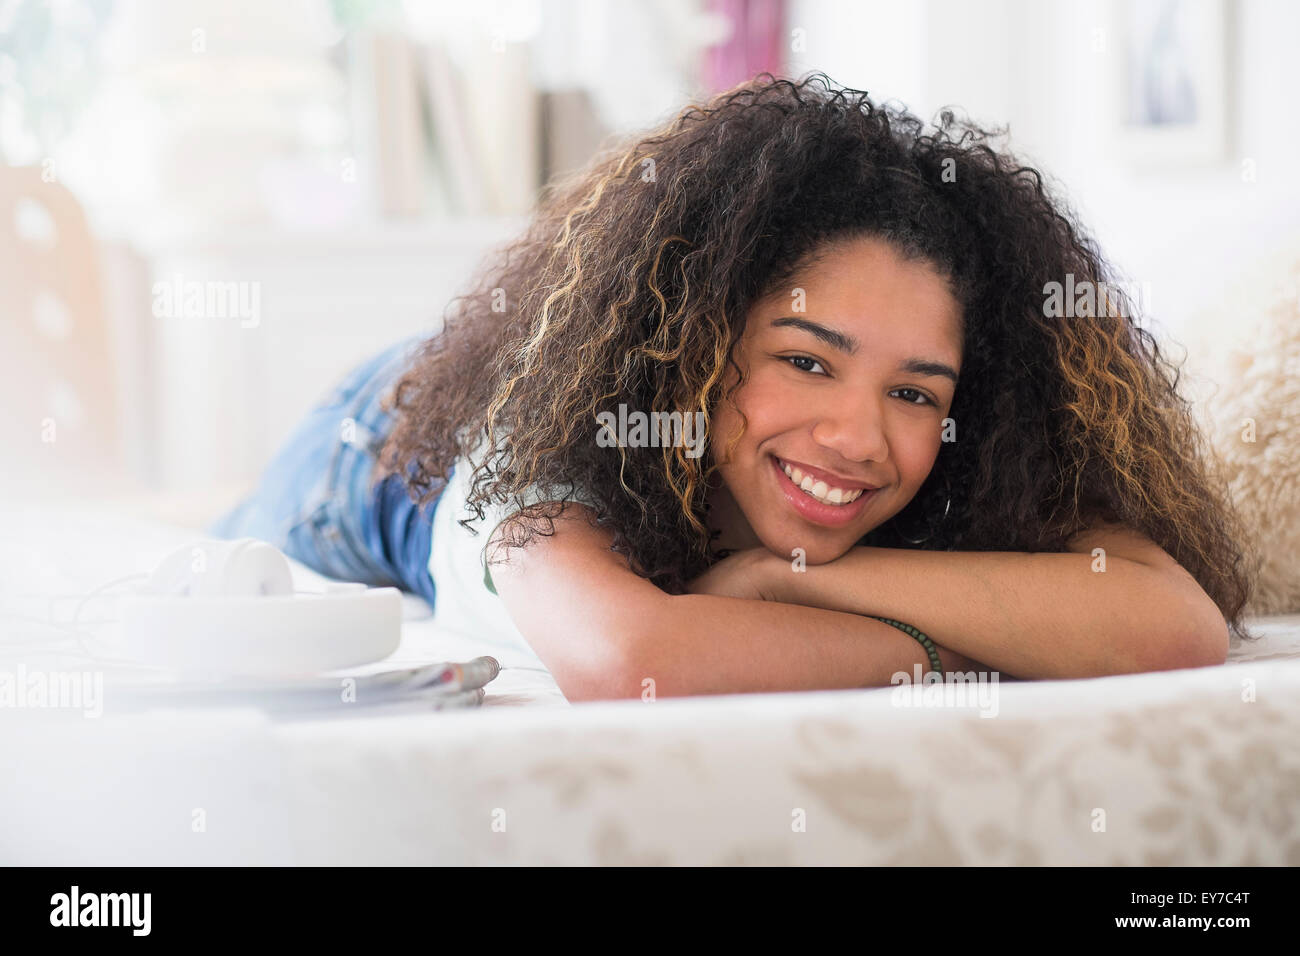 Retrato de una adolescente (16-17) tumbado en la cama Foto de stock